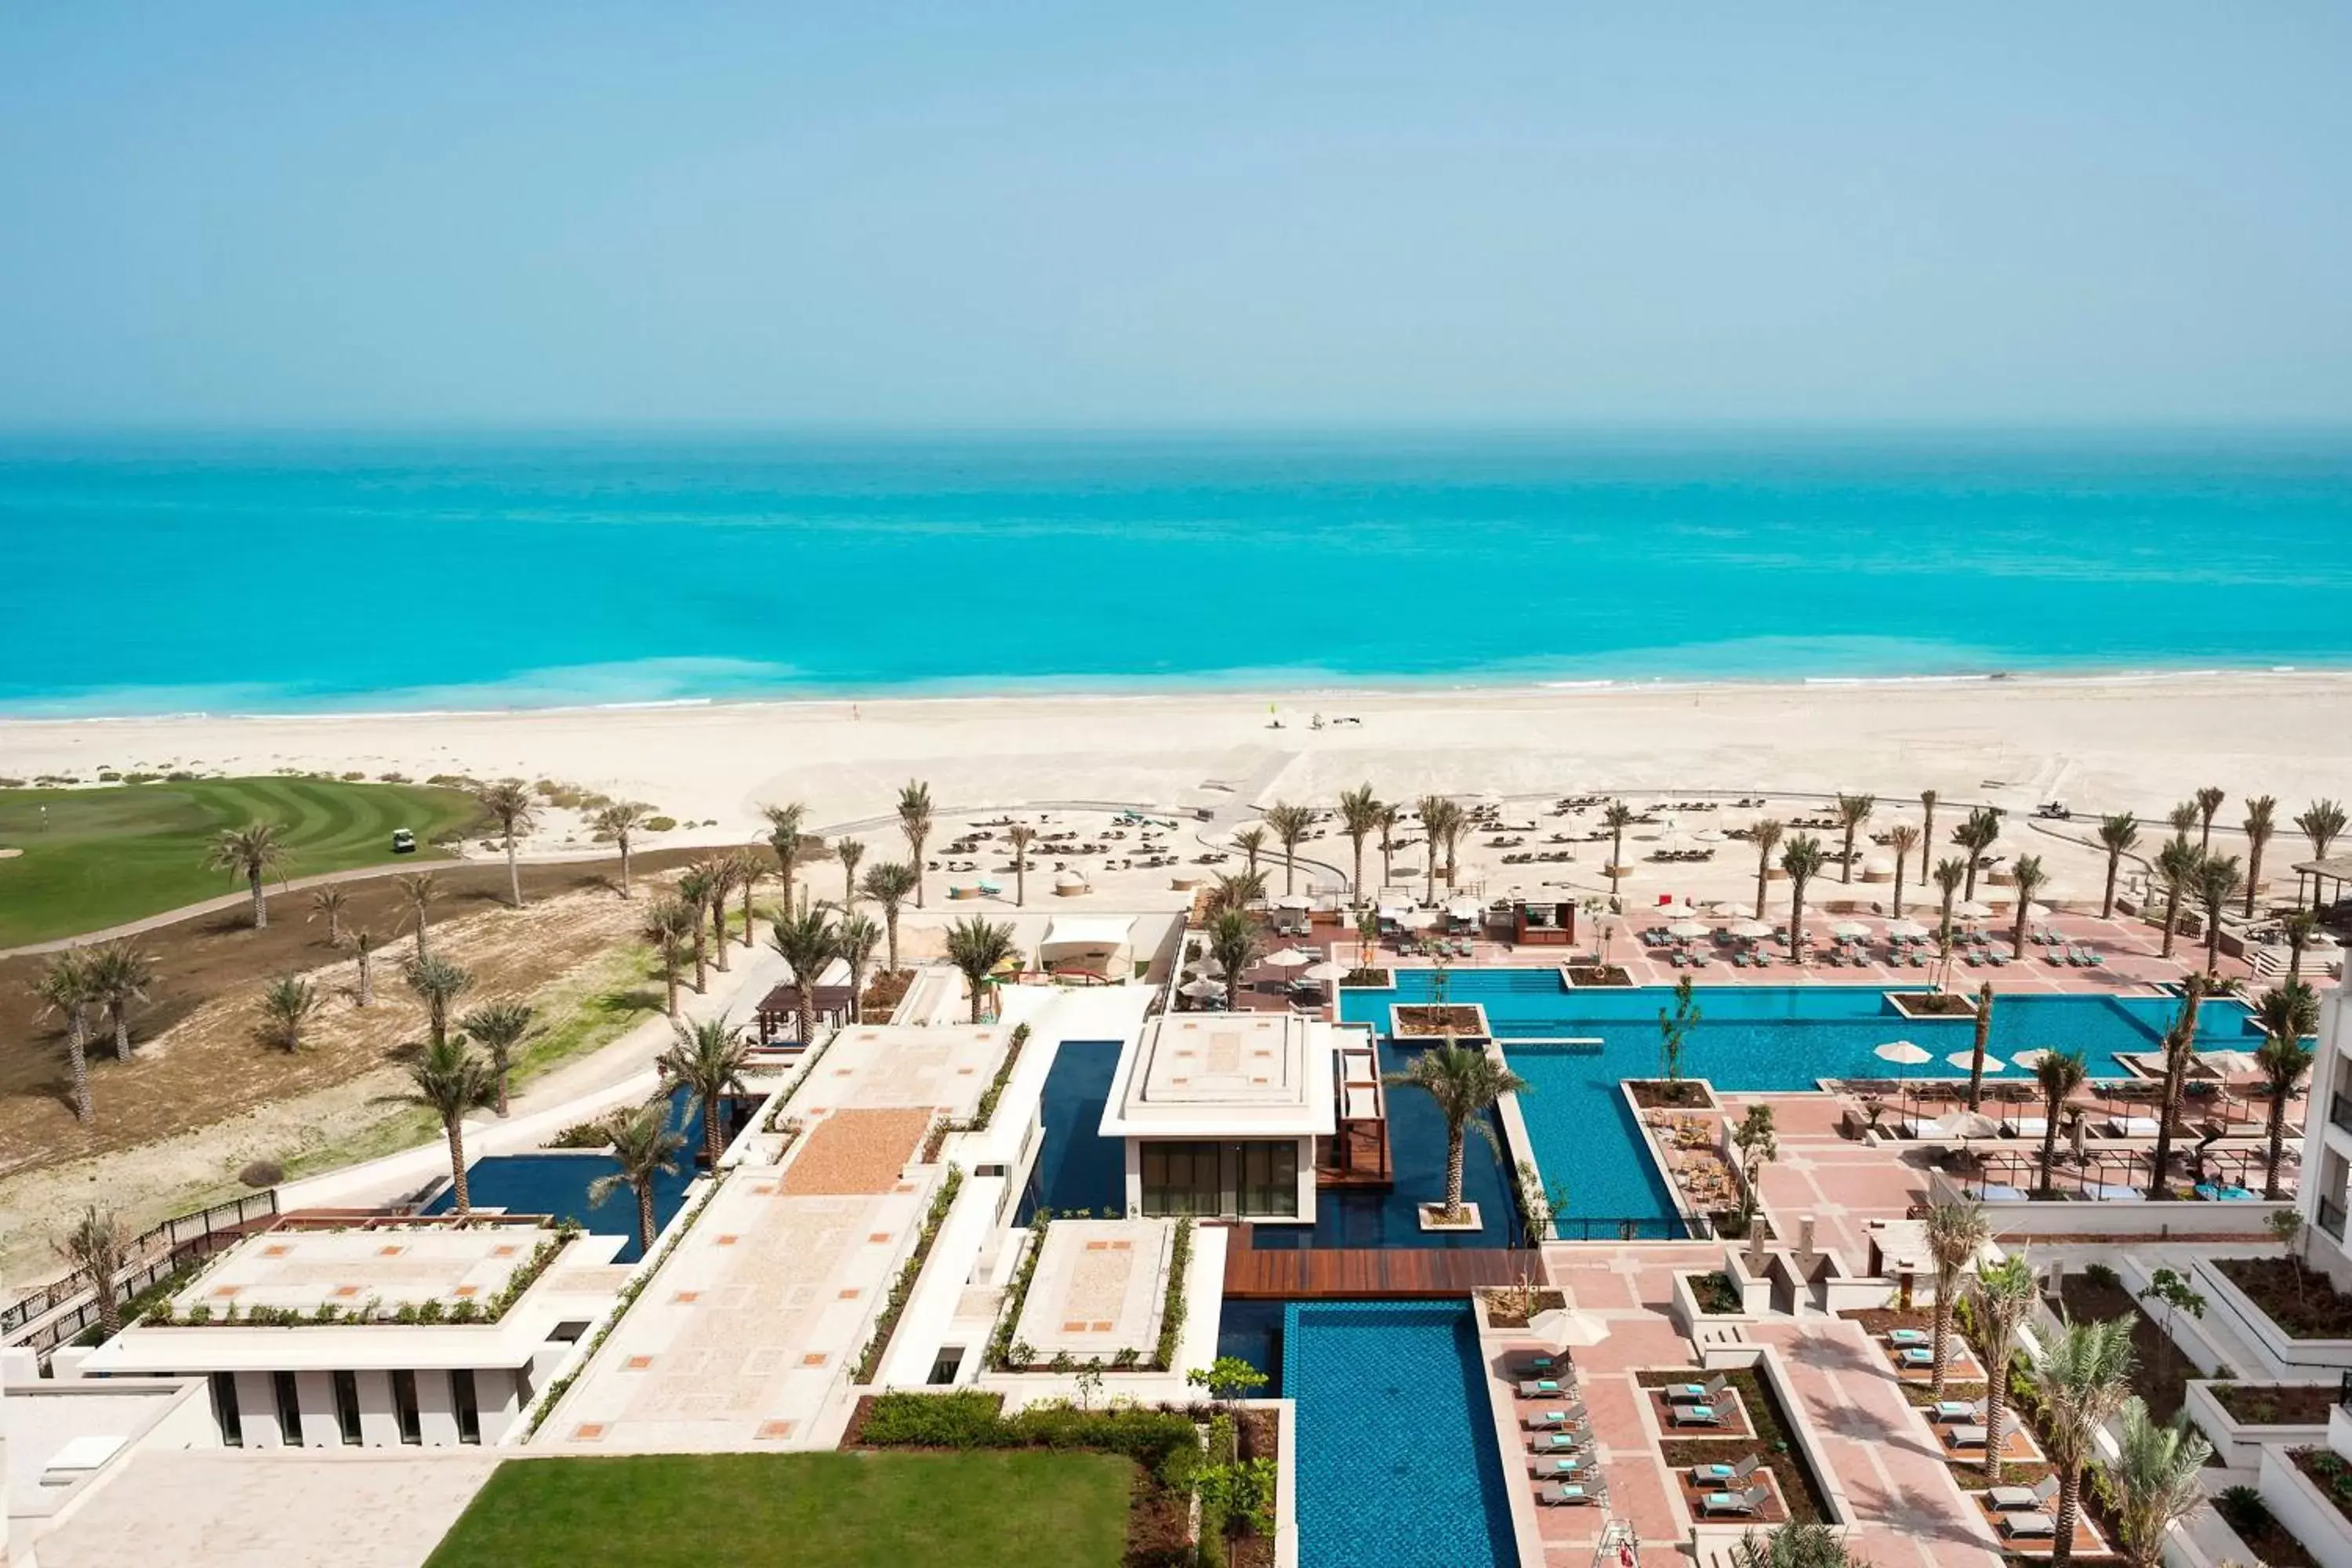 Property building, Pool View in The St. Regis Saadiyat Island Resort, Abu Dhabi